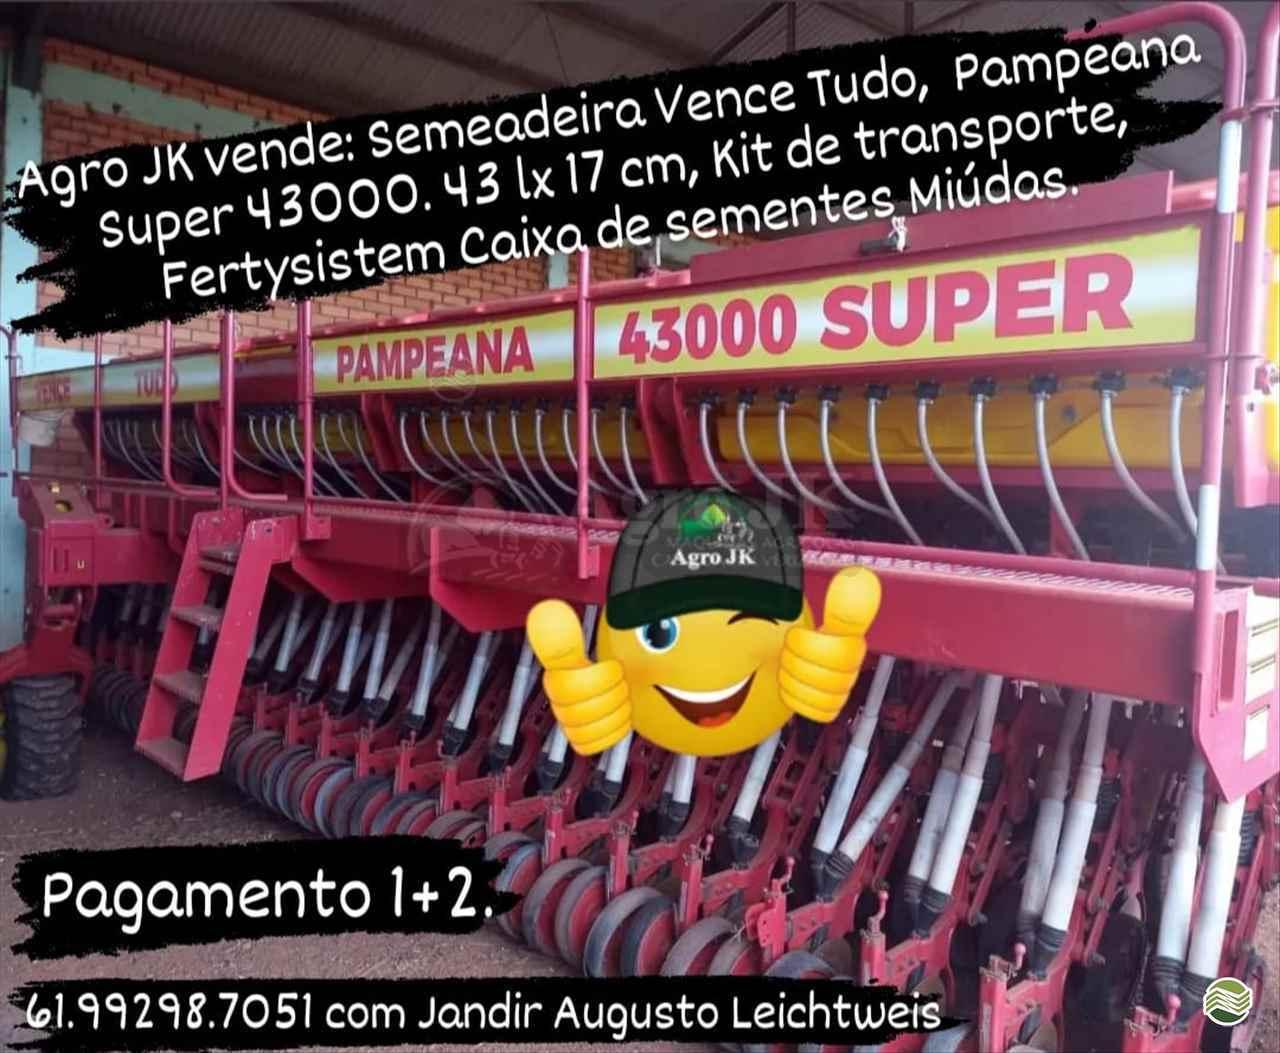 PAMPEANA SUPER 43000